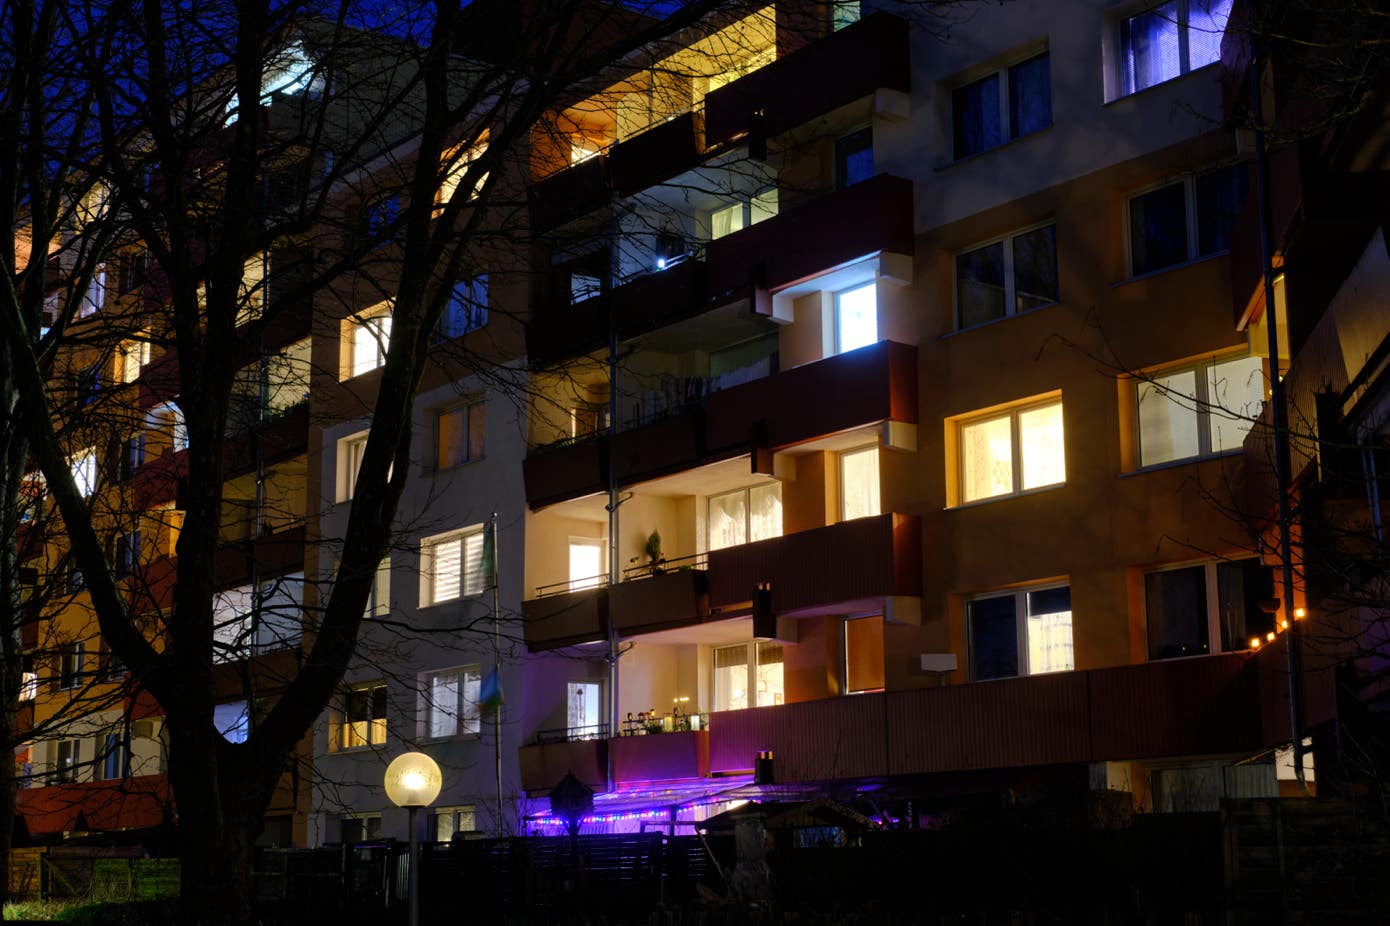 Wohnfassade in Kinderhaus in der Dunkelheit mit beleuchteten Fenster